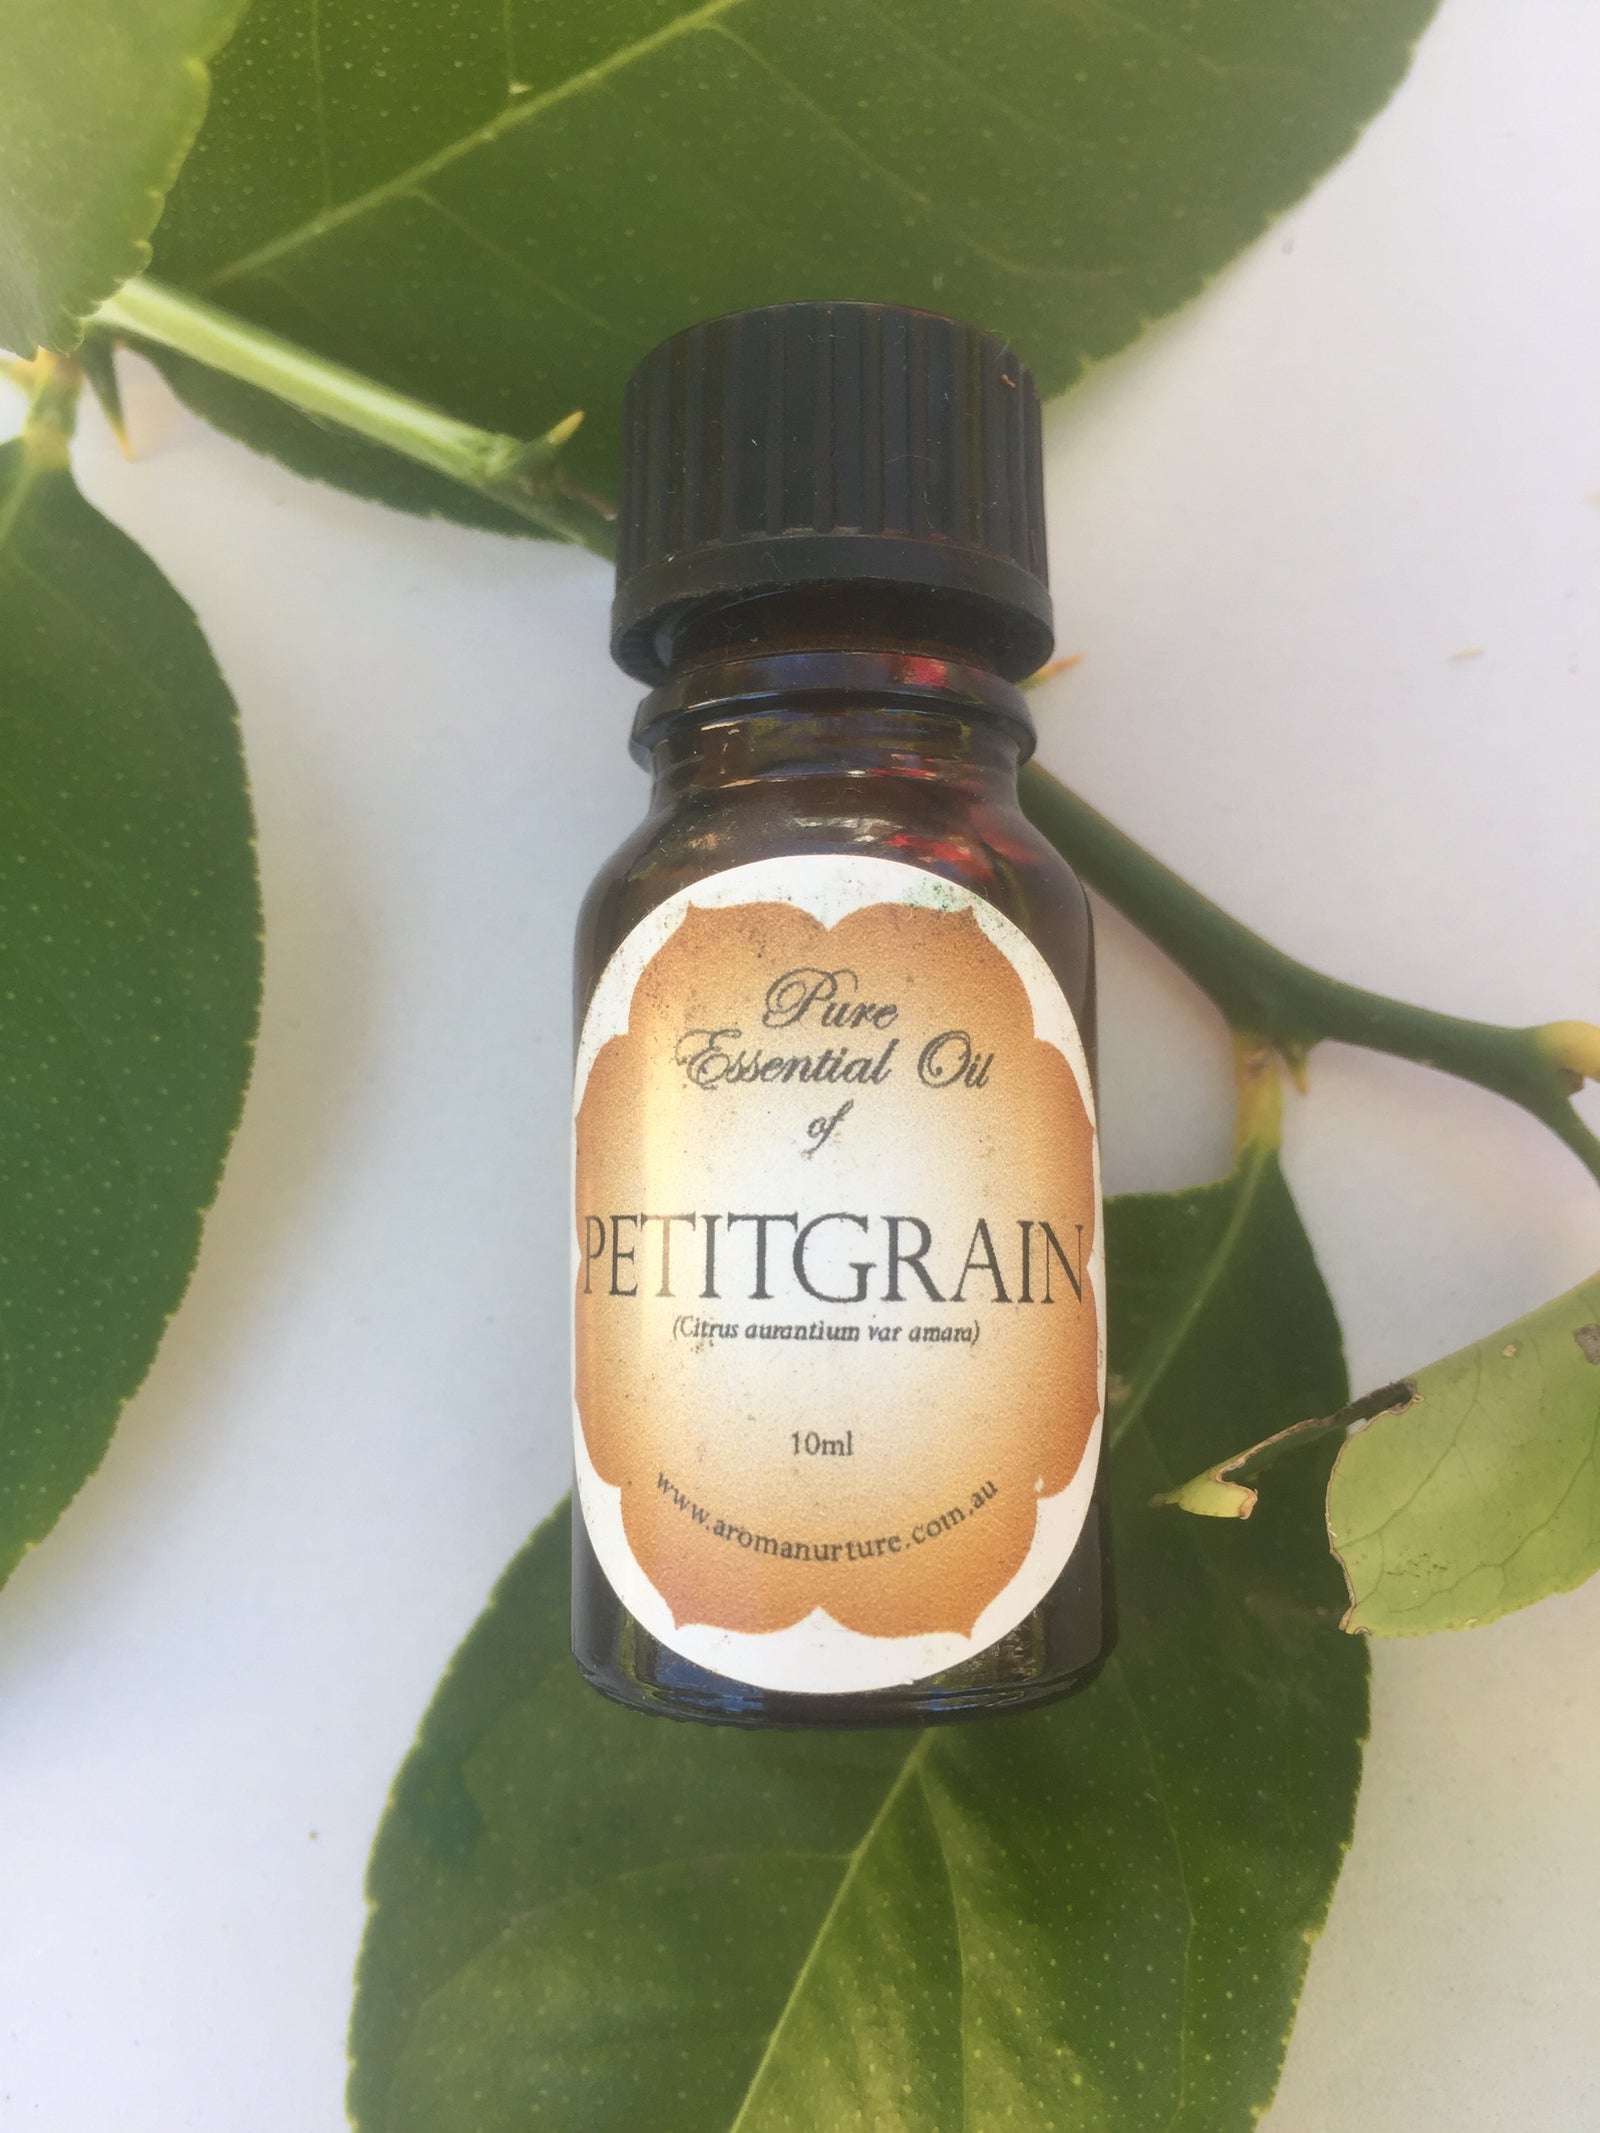 Pure Essential oil of Petitgrain 10mls.(Citrus aurantium var amara).